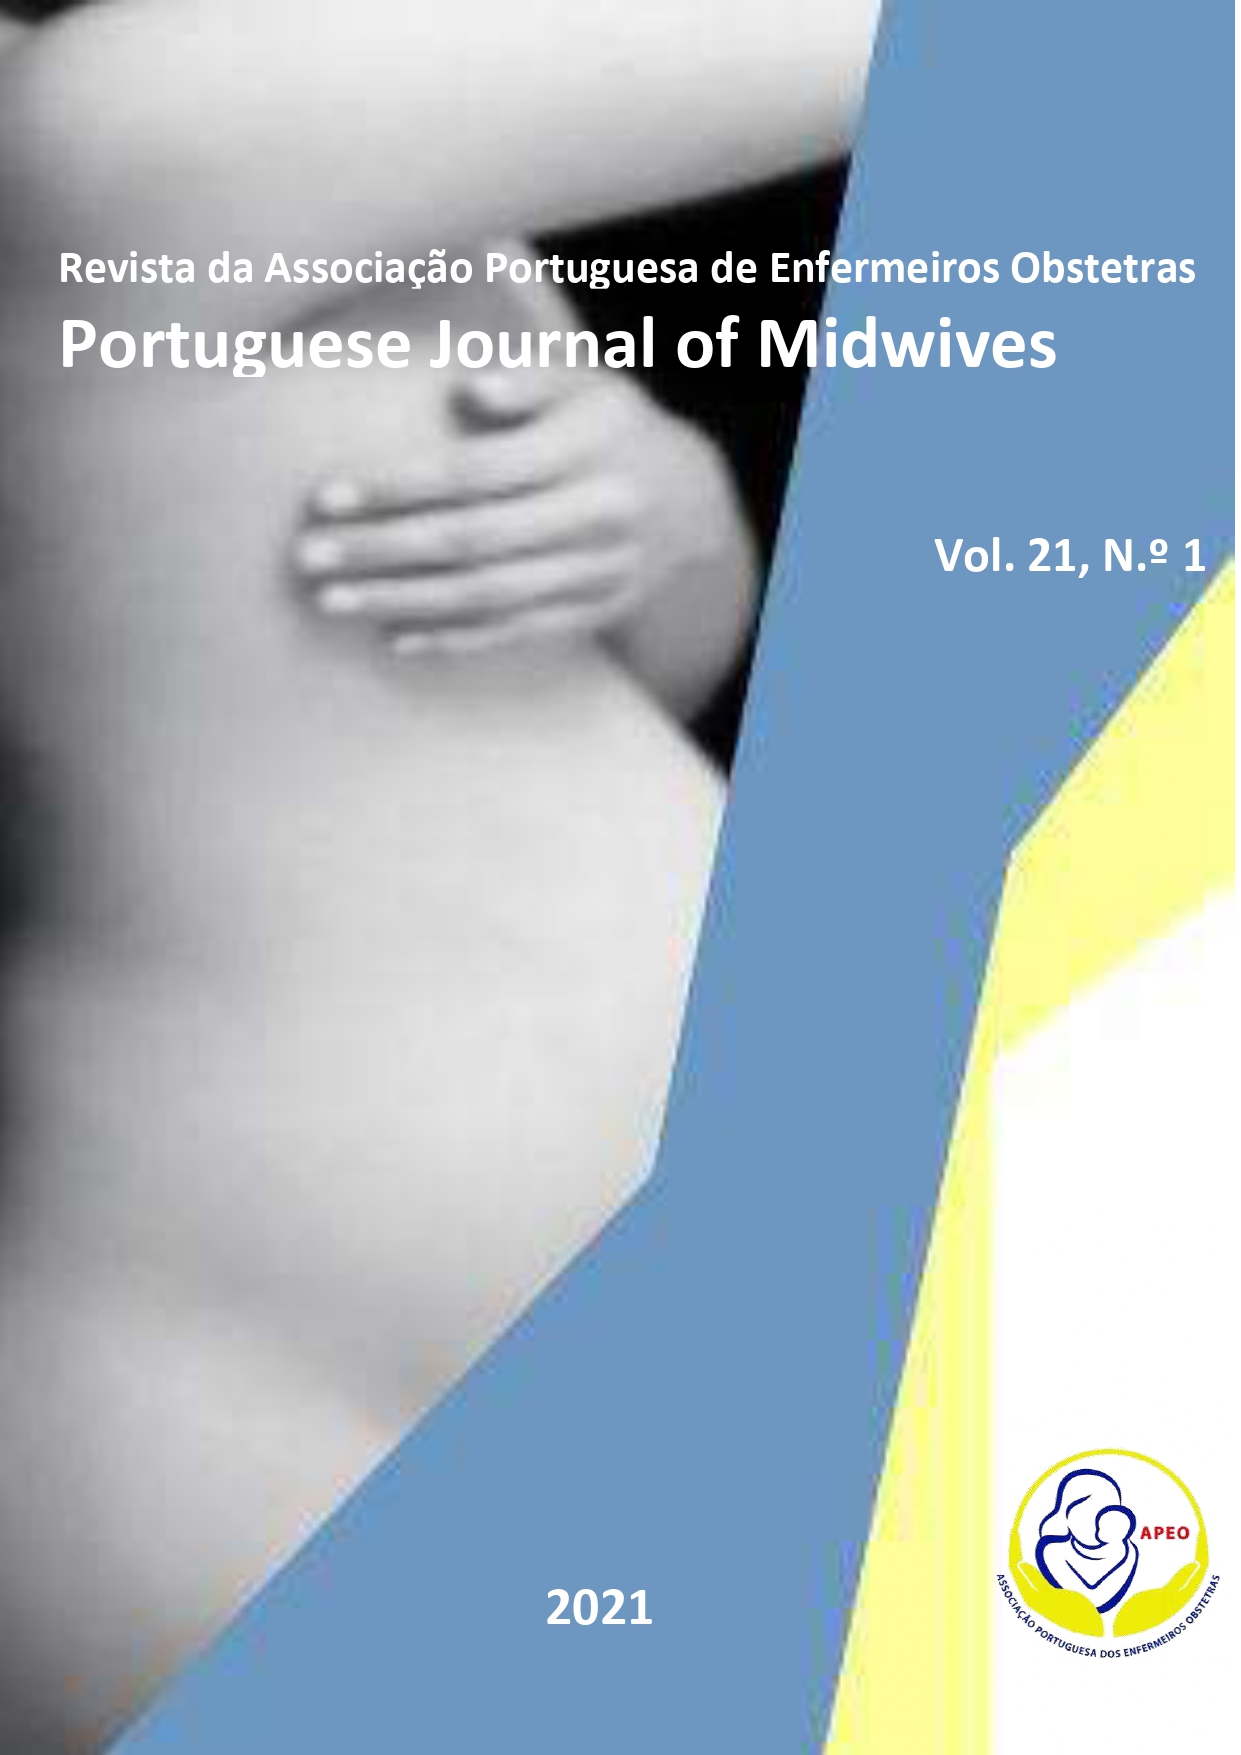 					Ver Vol. 21 N.º 1 (2021): Revista da Associação Portuguesa de Enfermeiros Obstetras
				